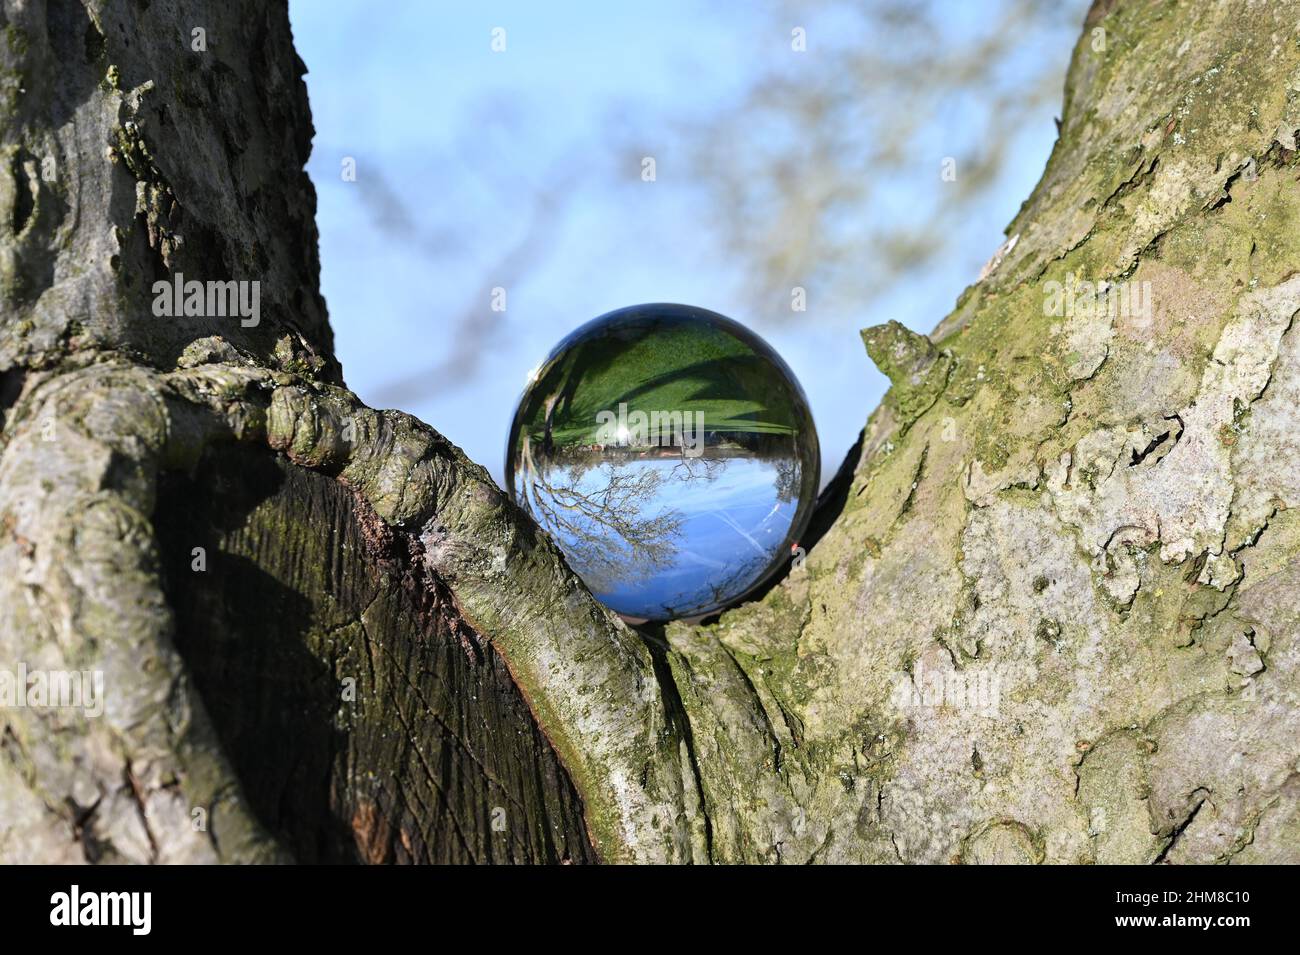 Ambiente concetto, una sfera di cristallo si trova nei rami di un albero, riflesso del paesaggio. Concetto e tema della natura, protezione ambientale Foto Stock